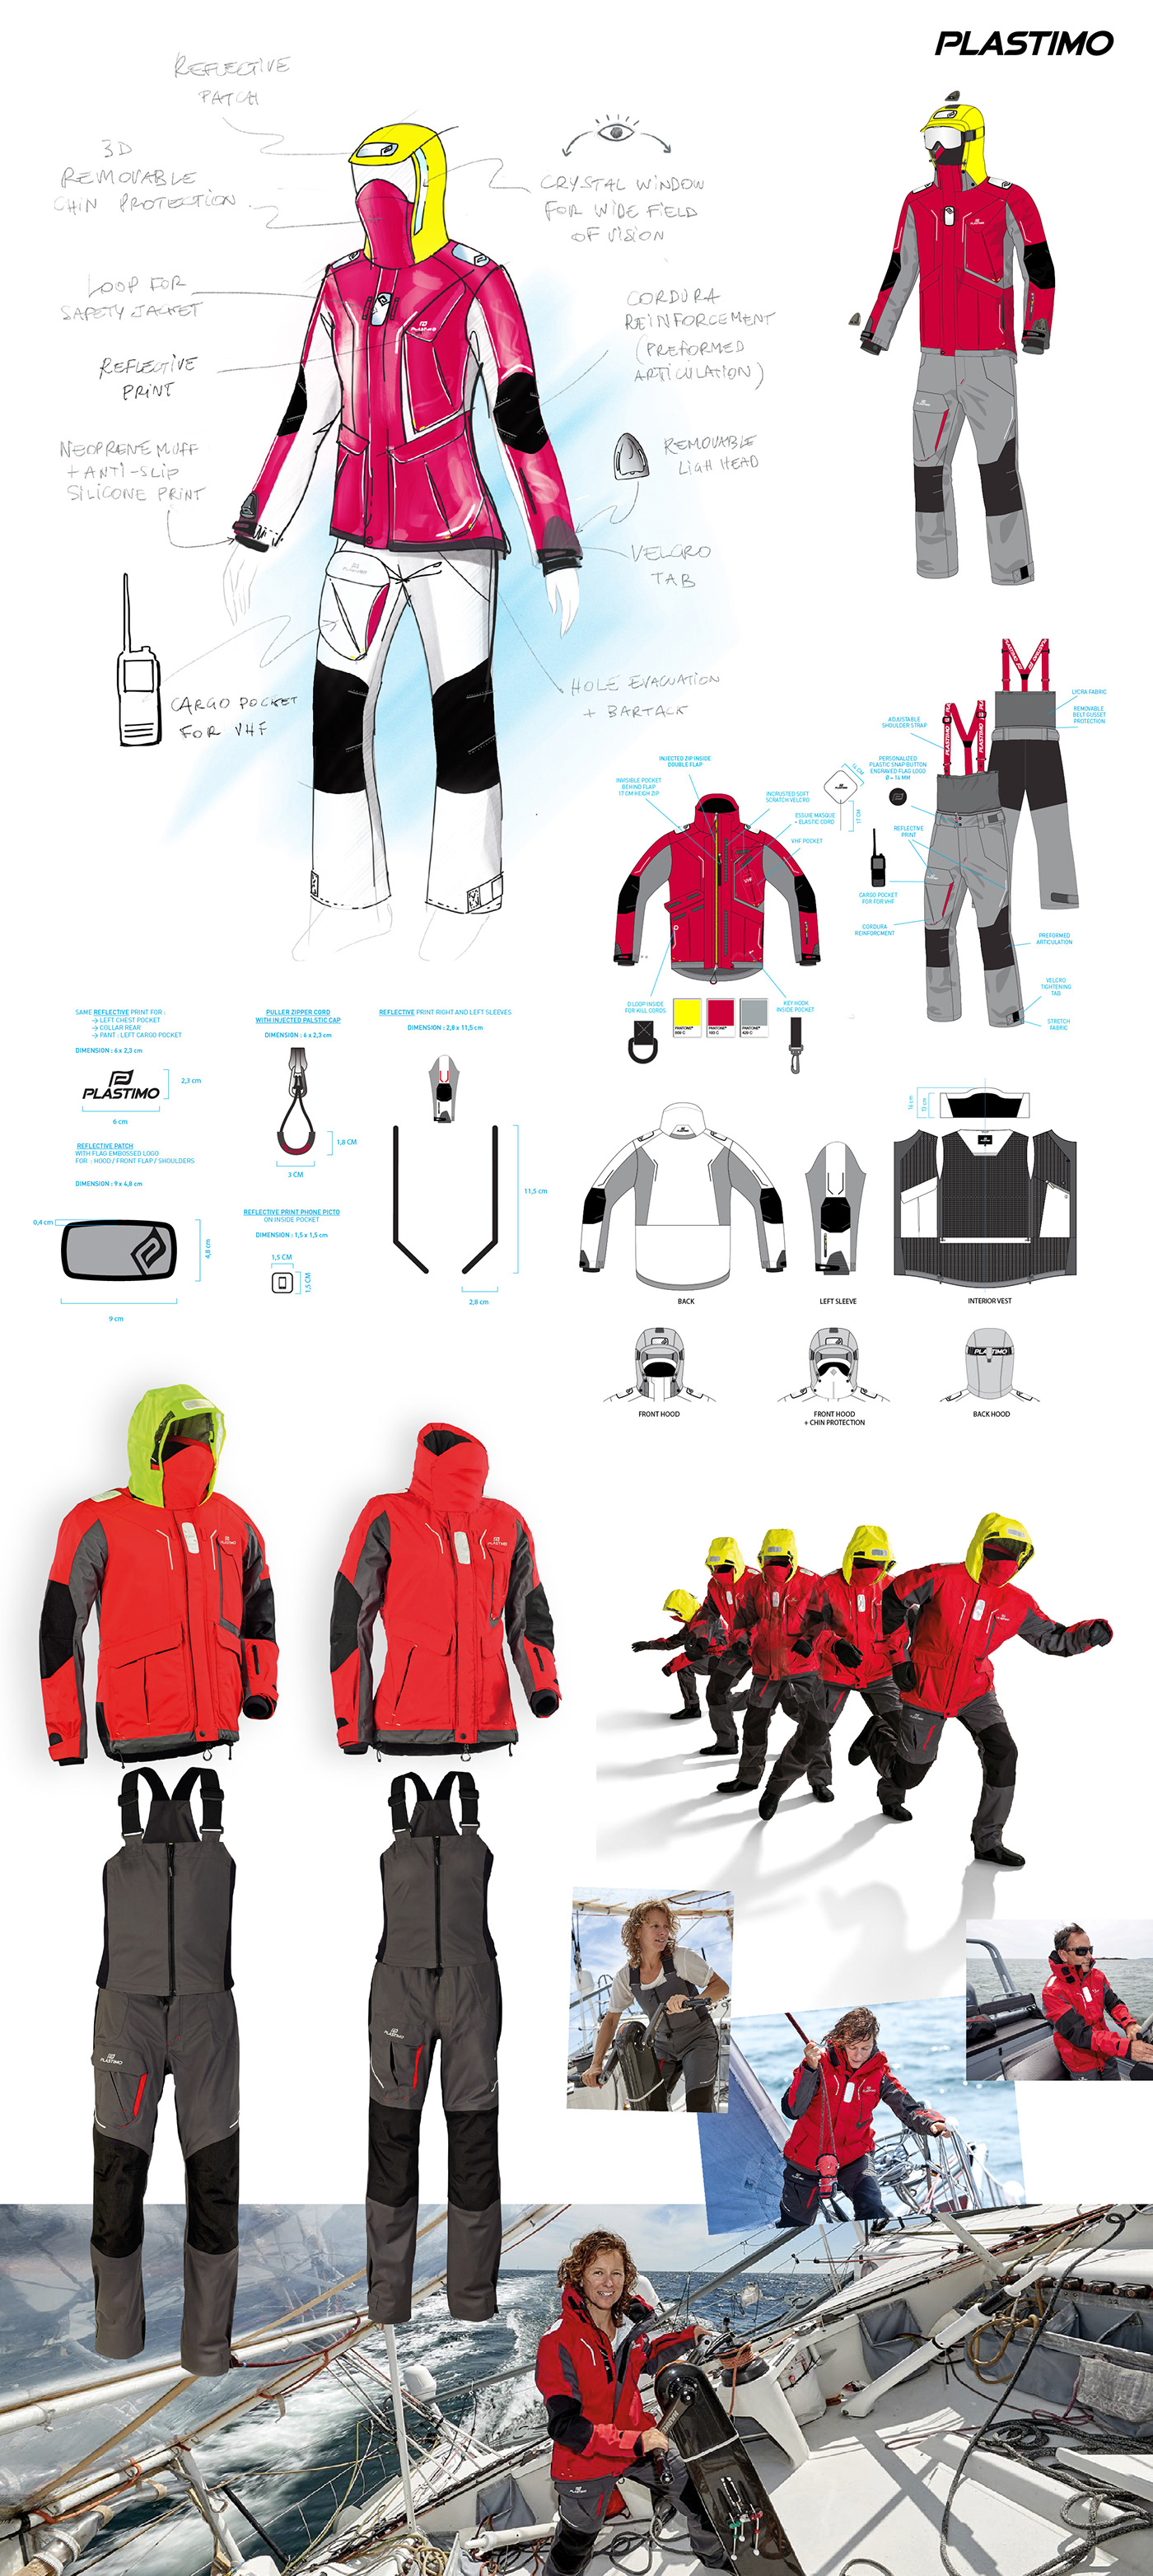 jacket Pant high seas accesorisation TRIMS coloration graphic design  technical views design conception wear